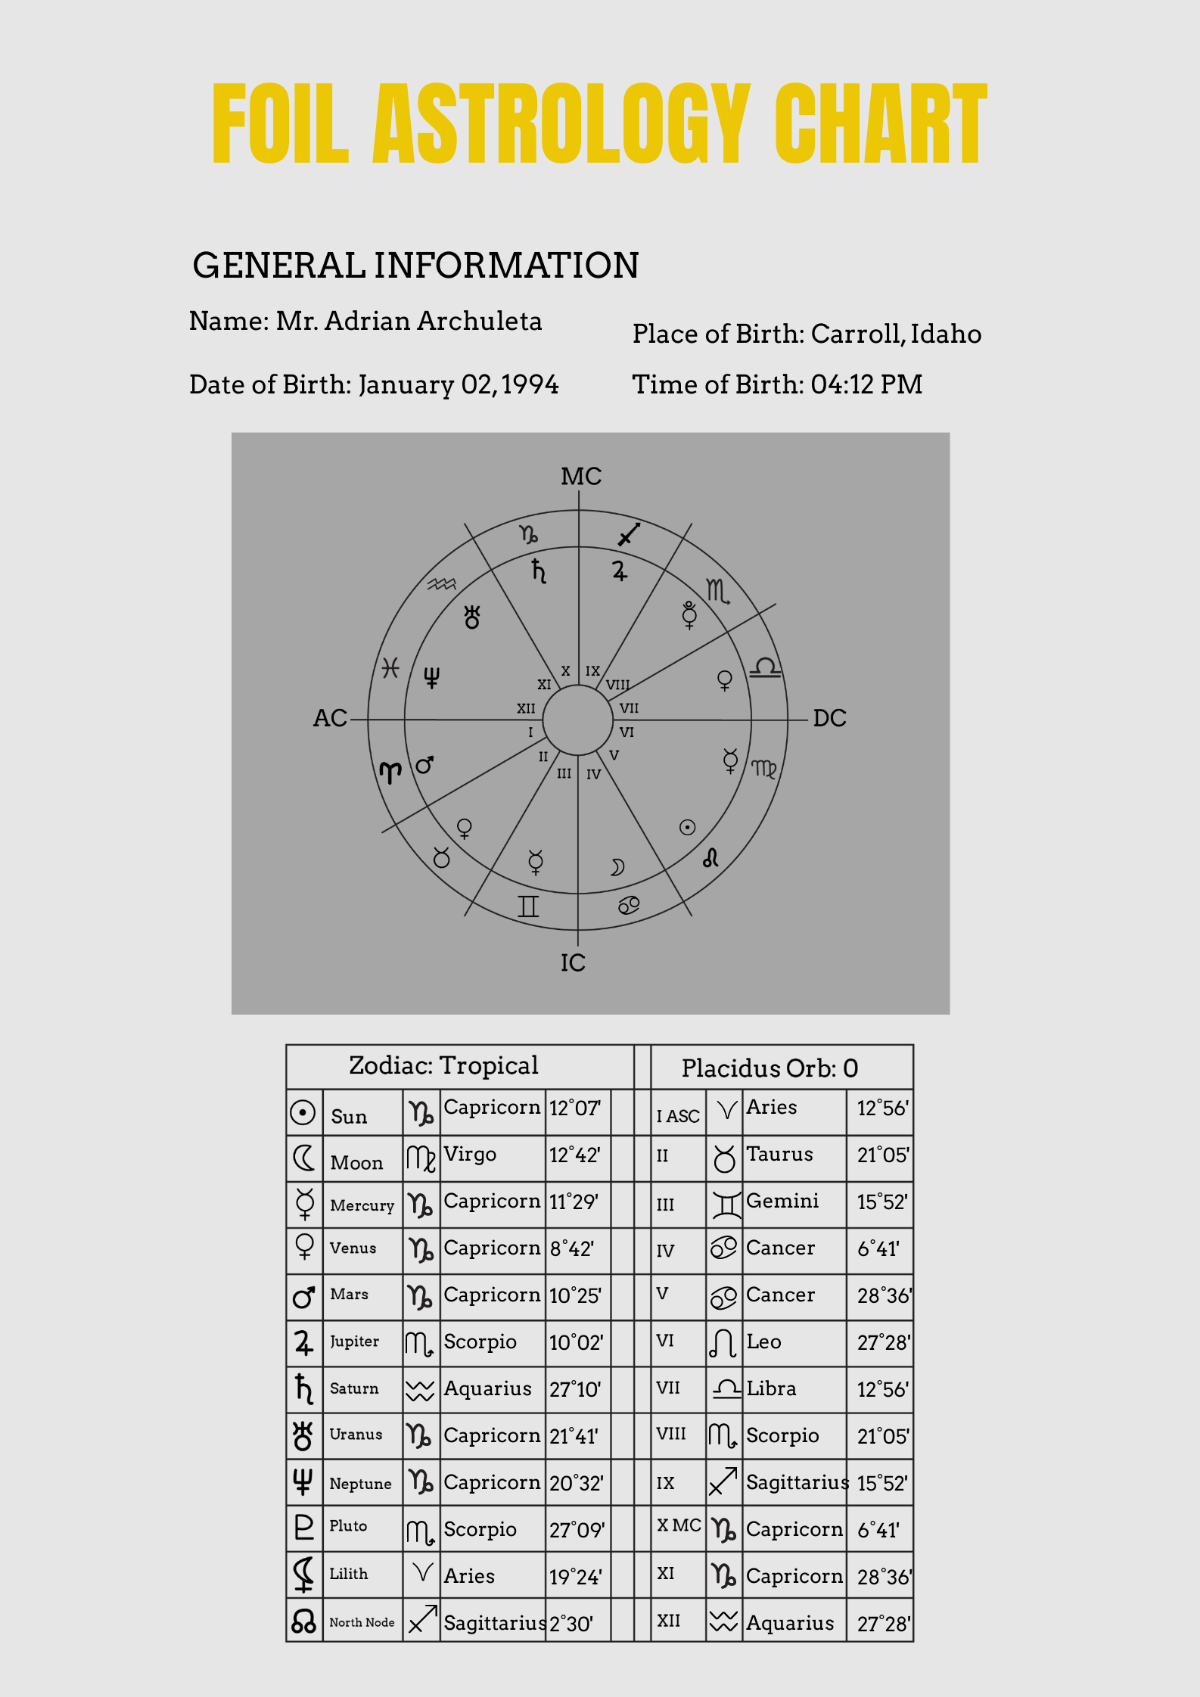 Foil Astrology Chart